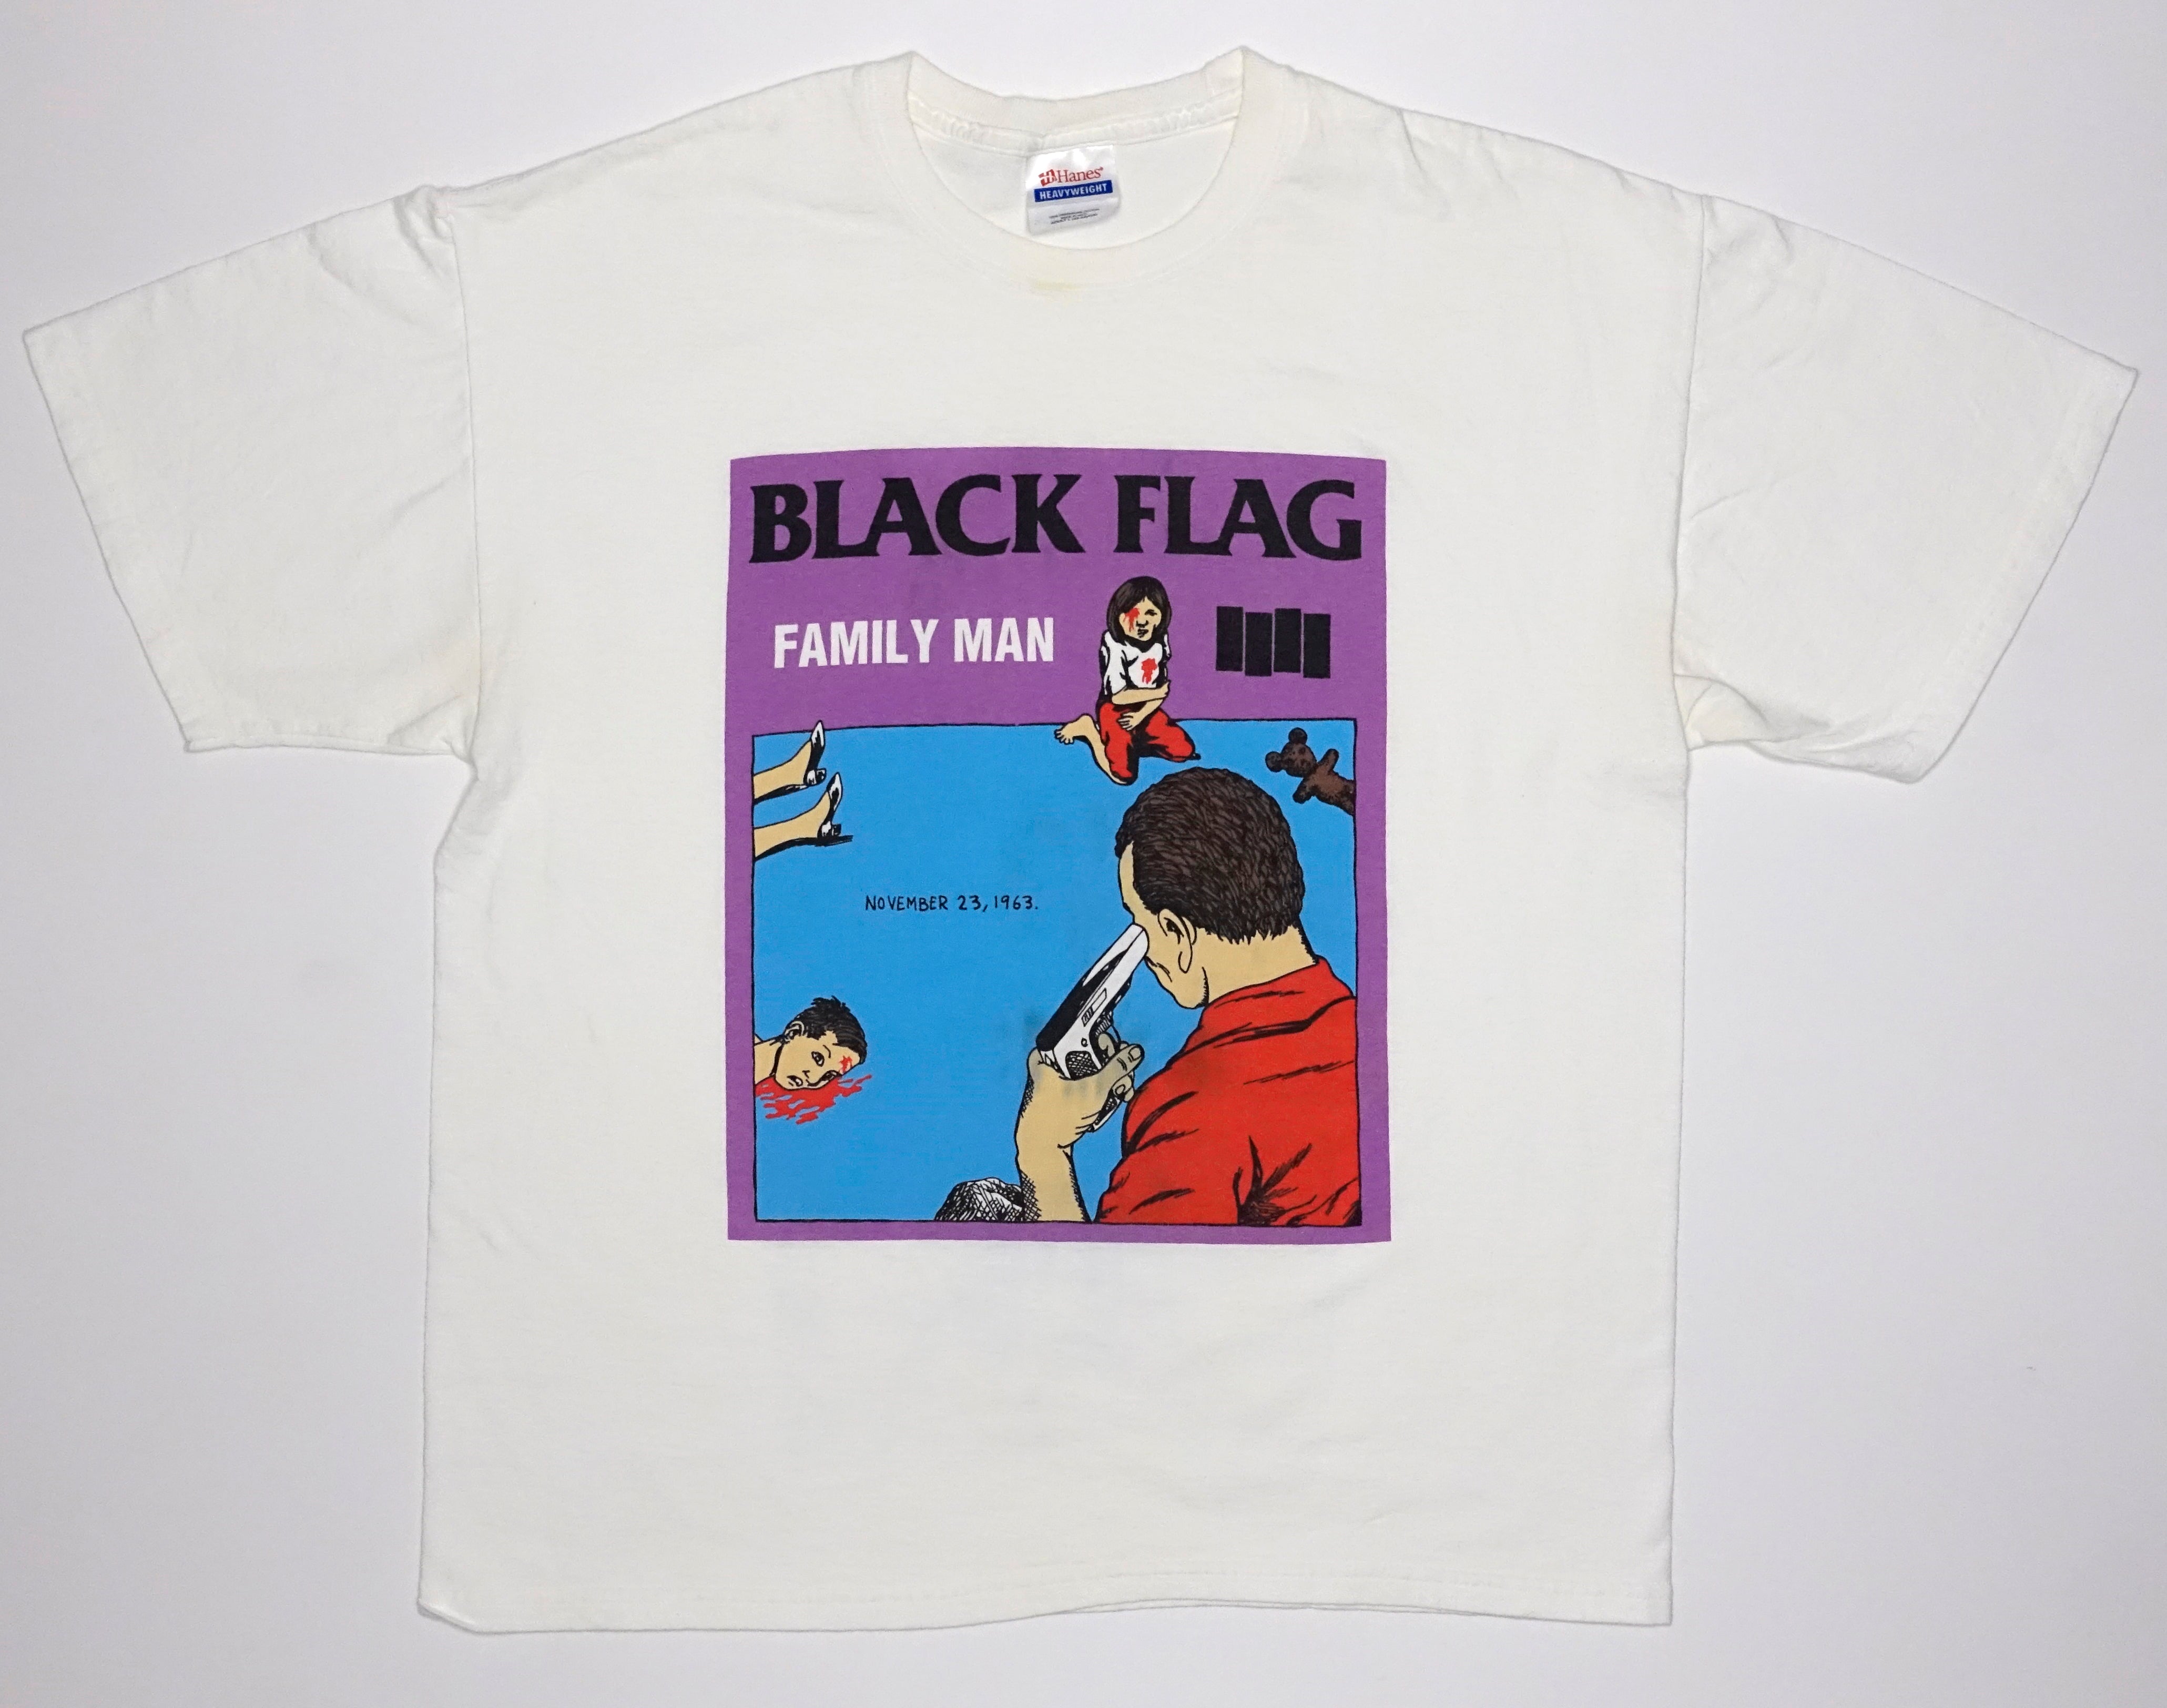 Black Flag - Family Man Tour Shirt Size Large